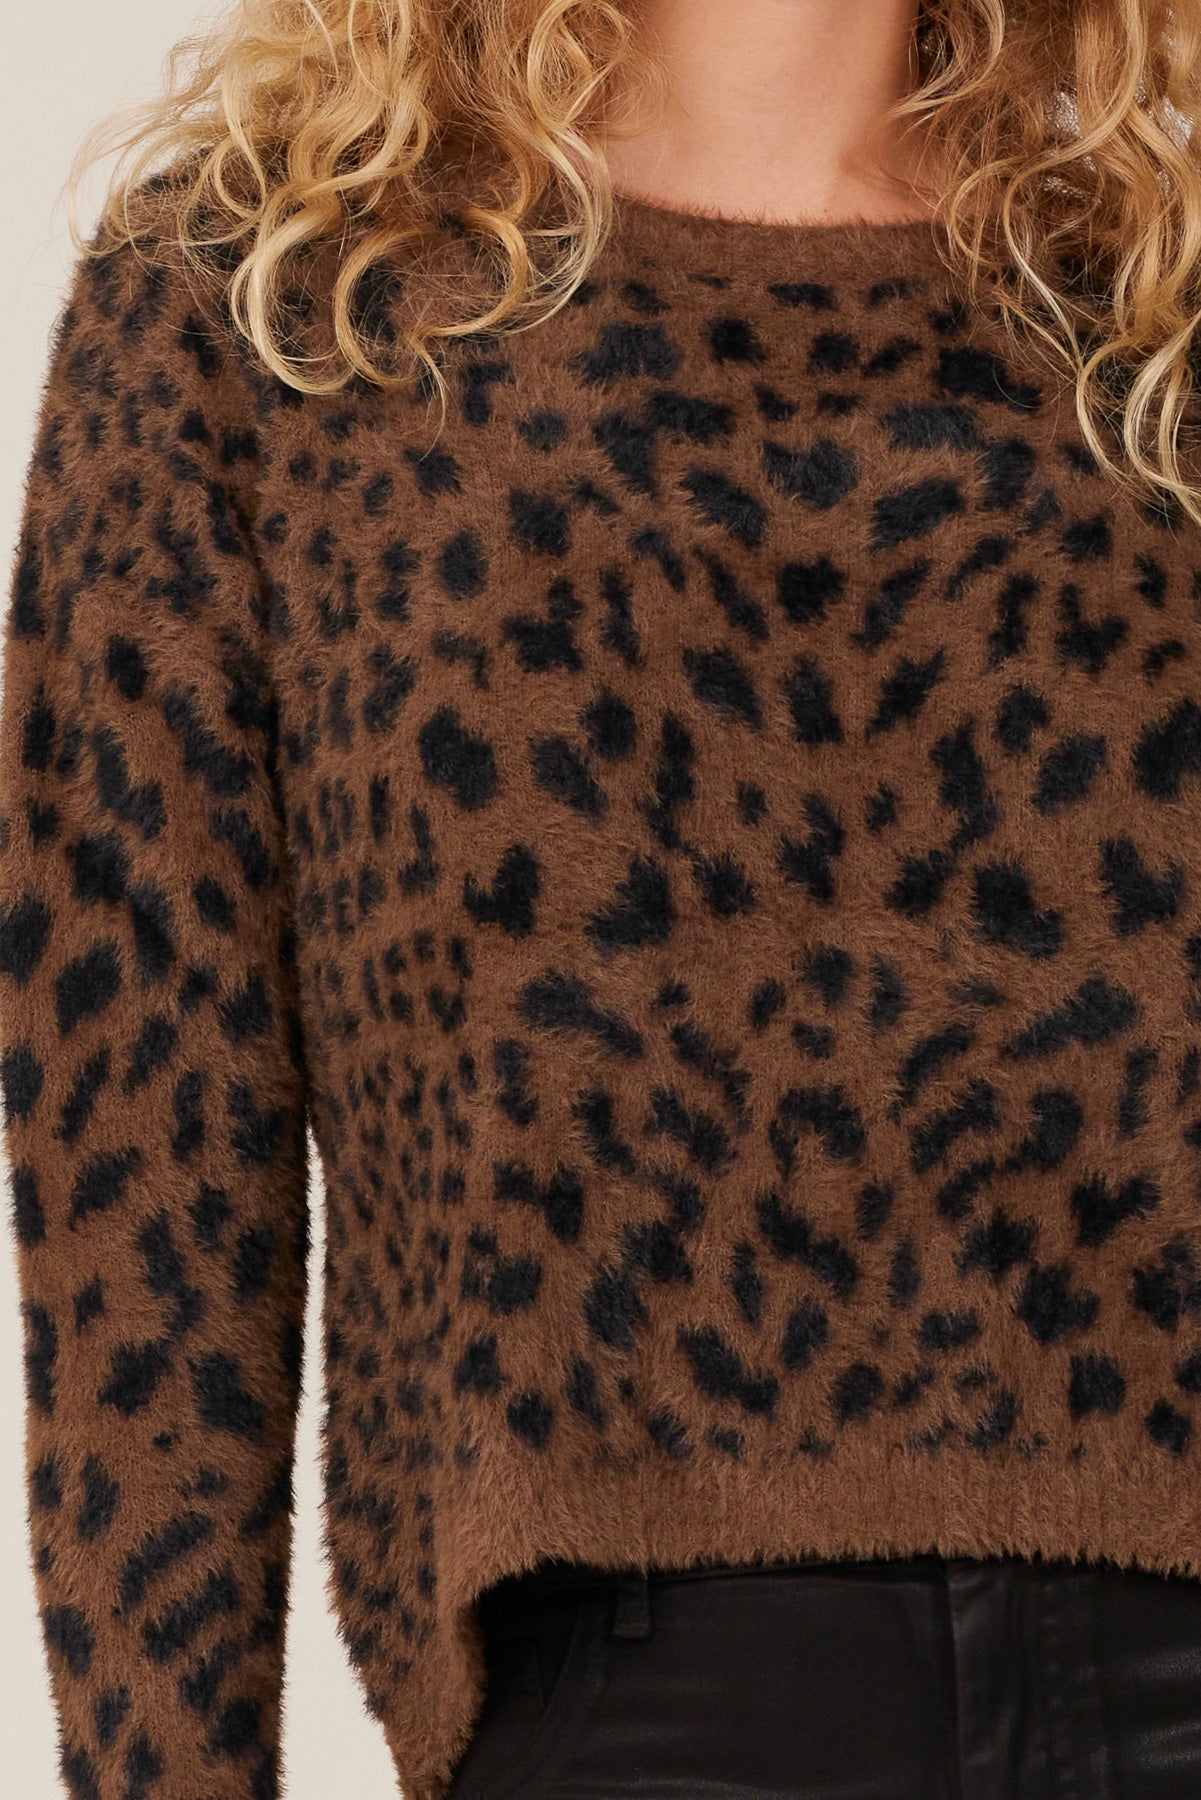 Bella DahlCroped Slouchy Sweater -Mocha LeopardSweaters & Jackets